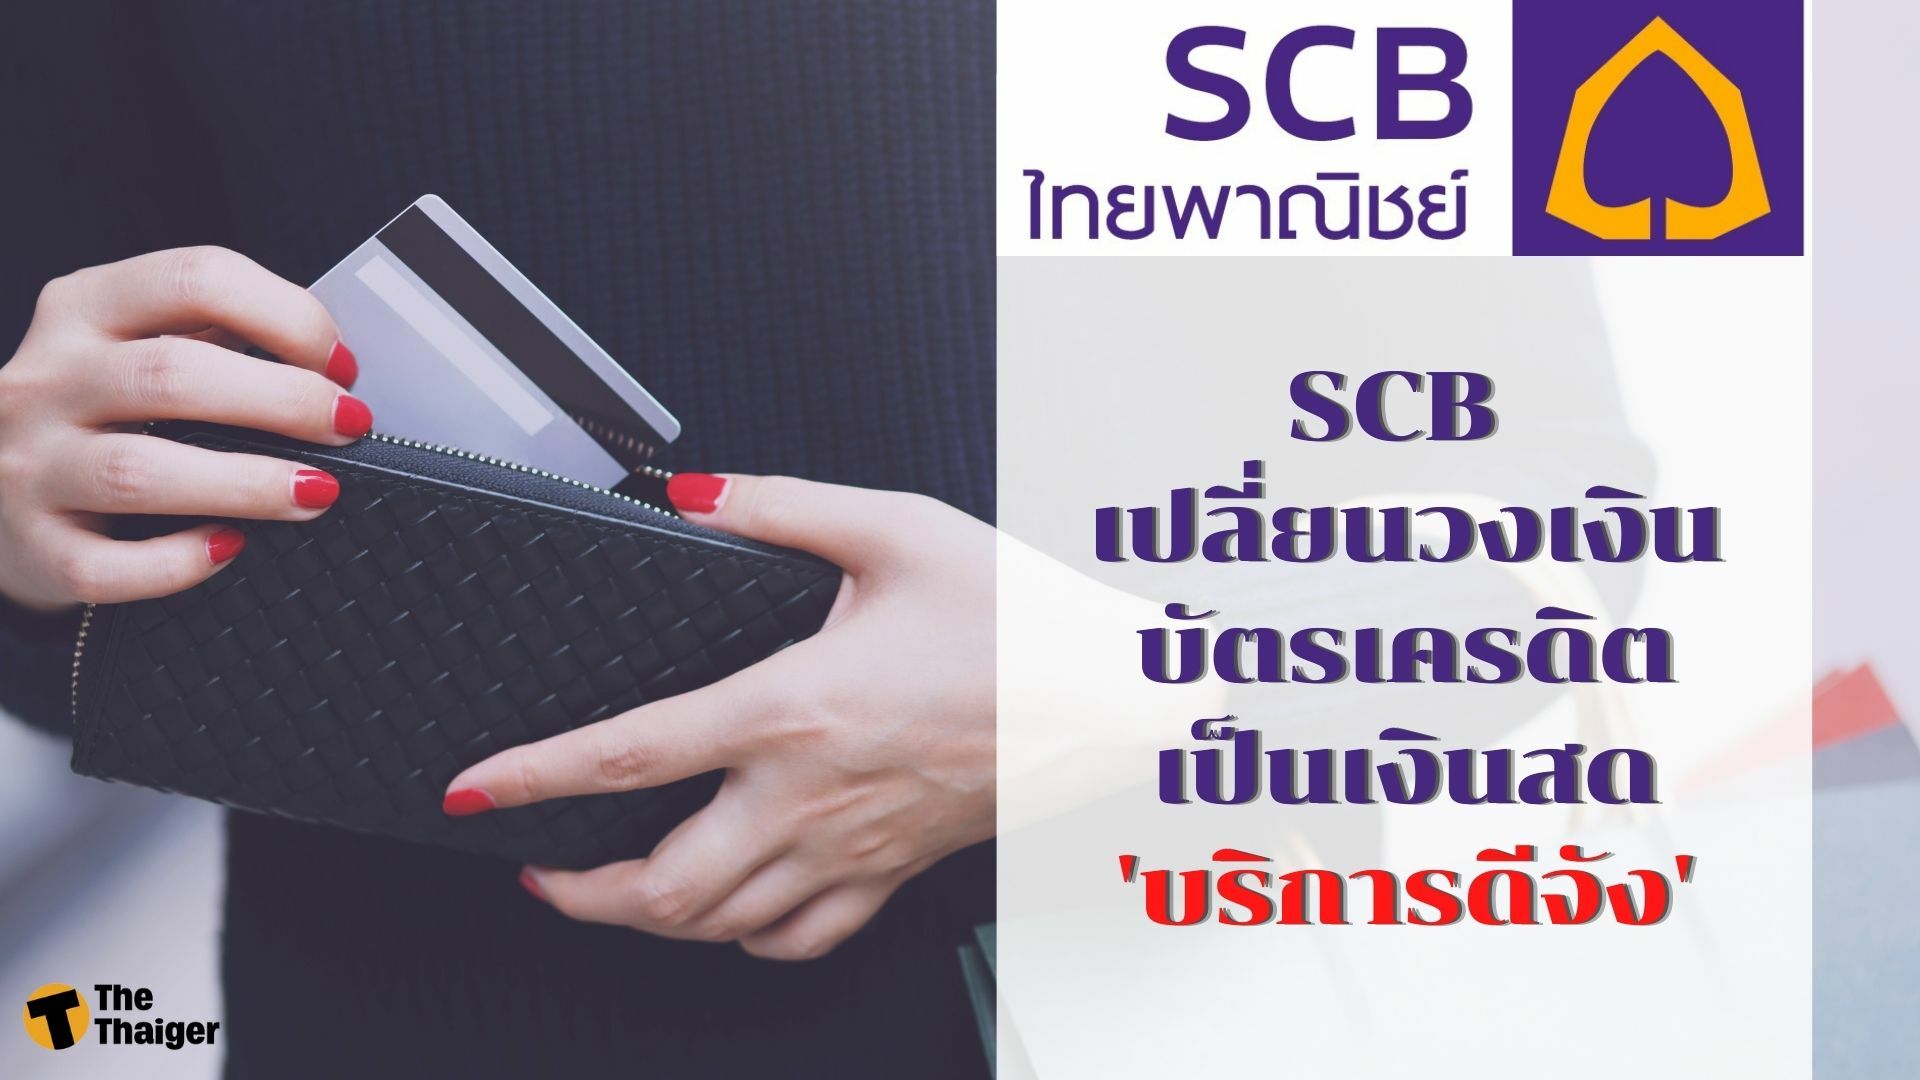 SCB เปลี่ยนวงเงินบัตรเครดิตเป็นเงินสด 'บริการดีจัง'